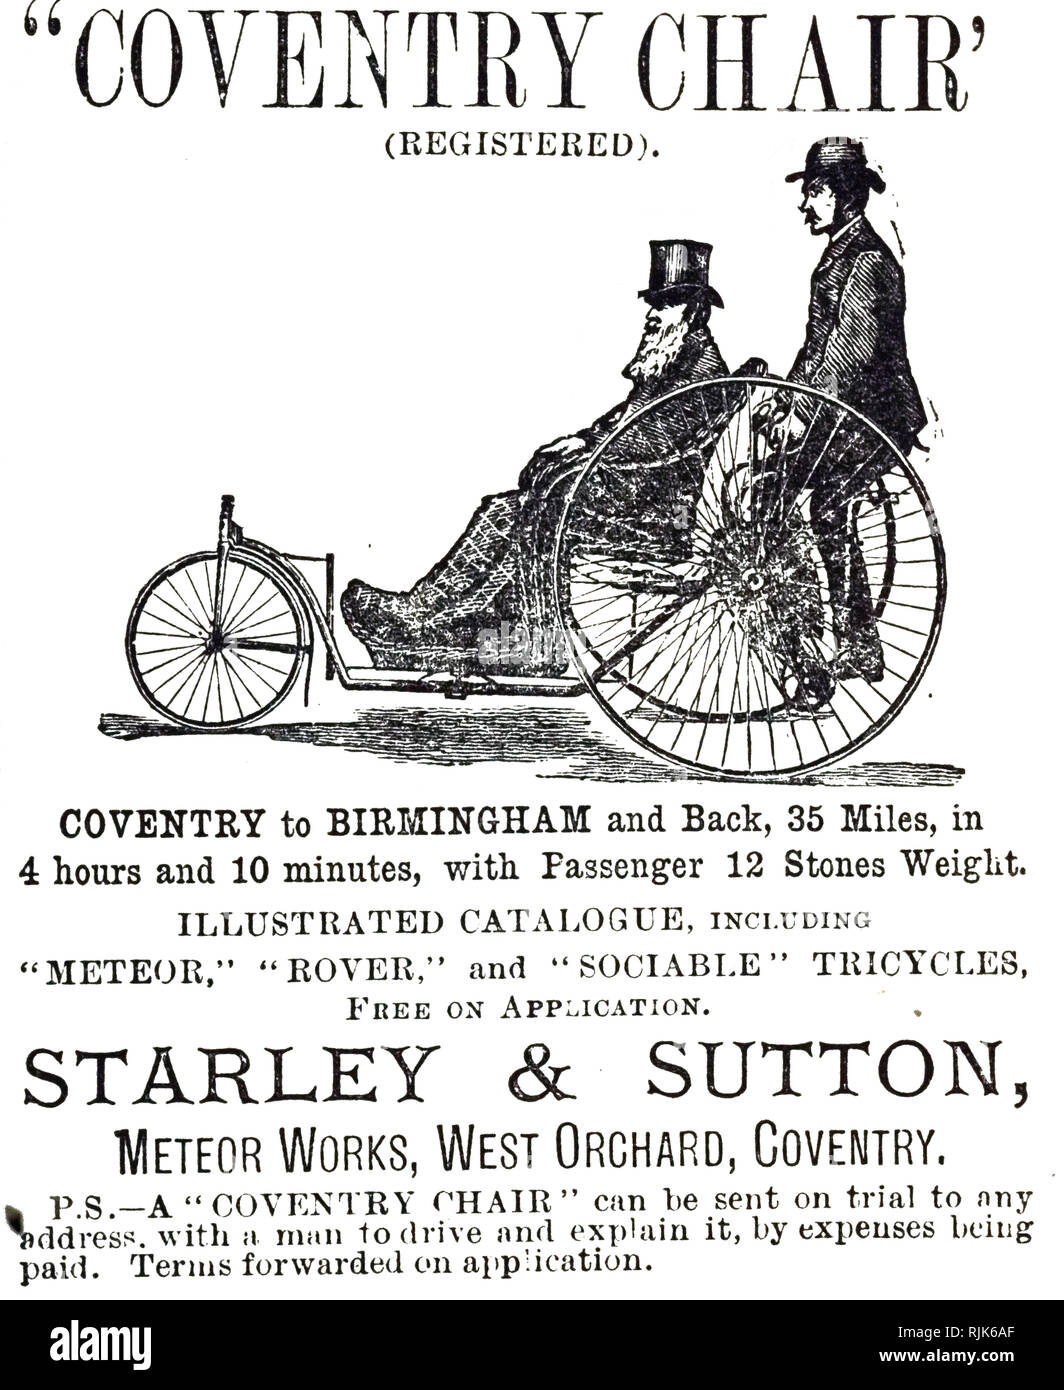 Eine Werbung für die 'Chair' - Coventry Coventry zu Birmingham und zurück in 4 Stunden und 10 Minuten. Das Dreirad würde Transport eine ungültige. Vom 19. Jahrhundert Stockfoto